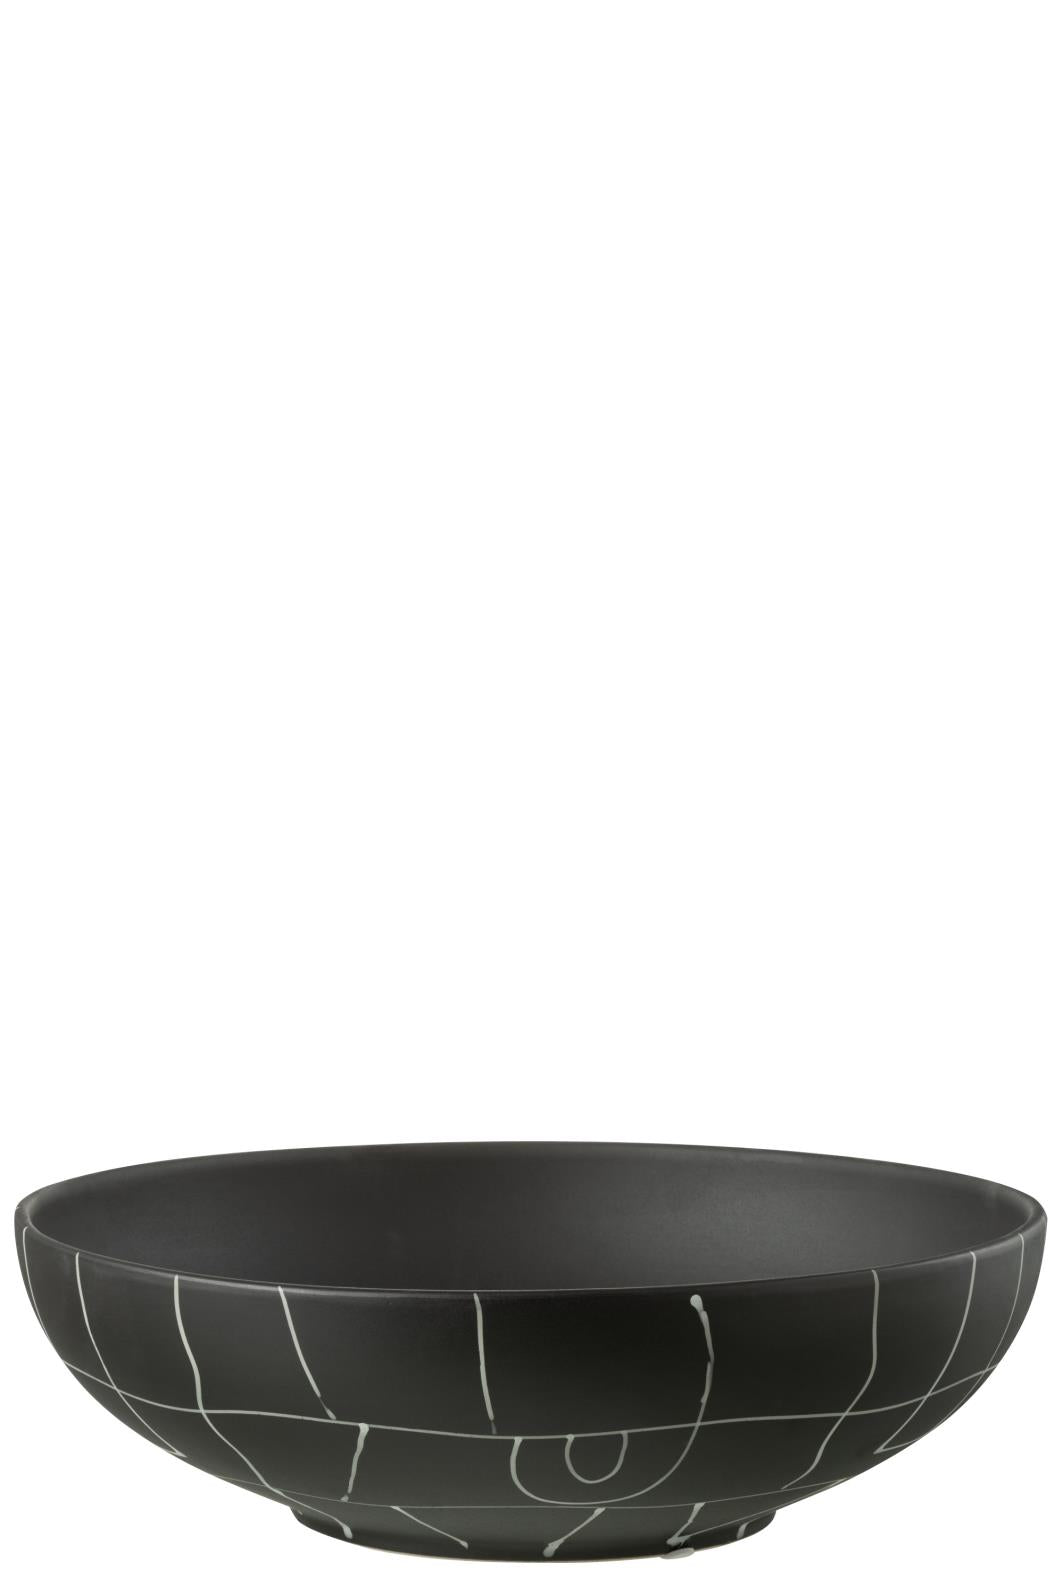 Dish Ceramic Black 35cm